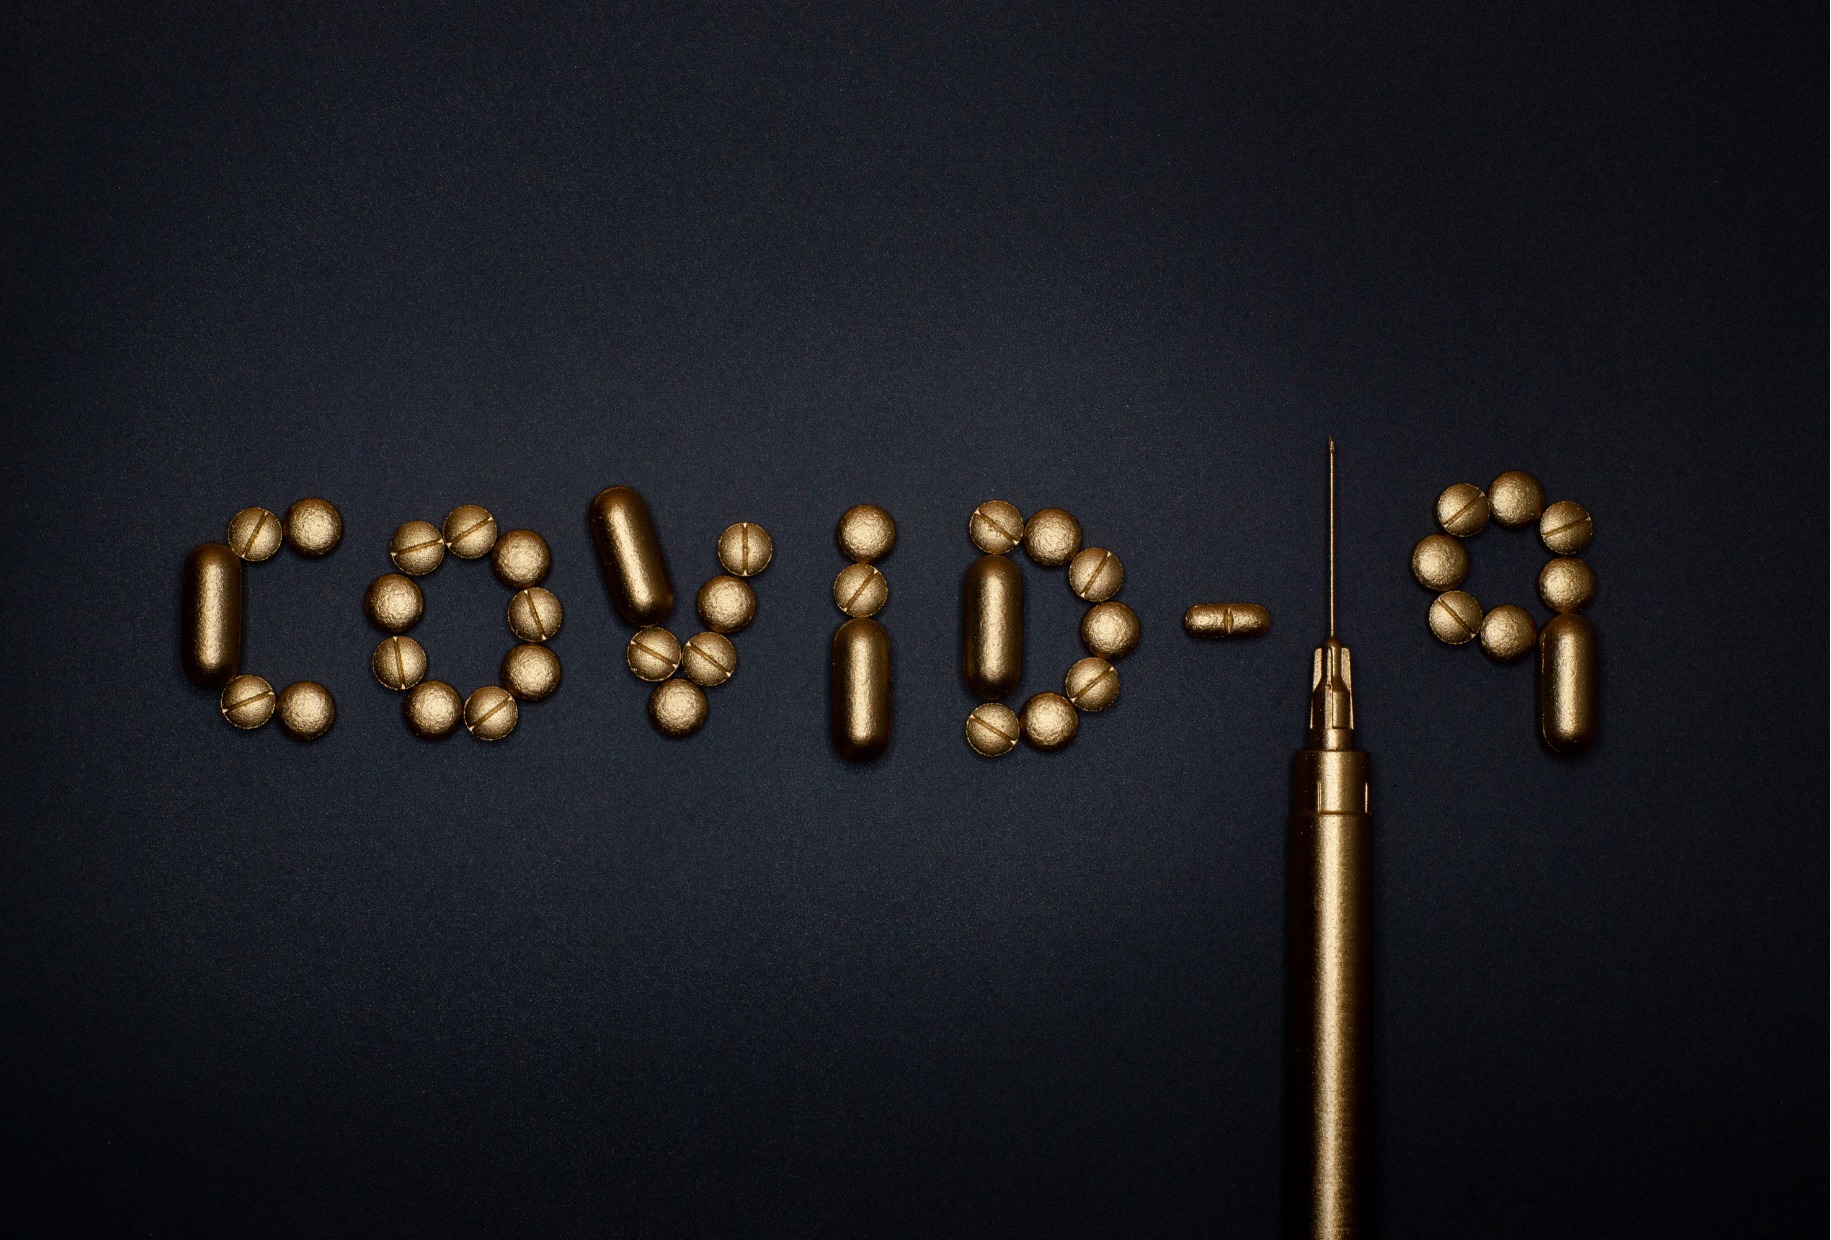 Nápis "COVID-19" vyskládaný z pilulek a z injekční stříkačky